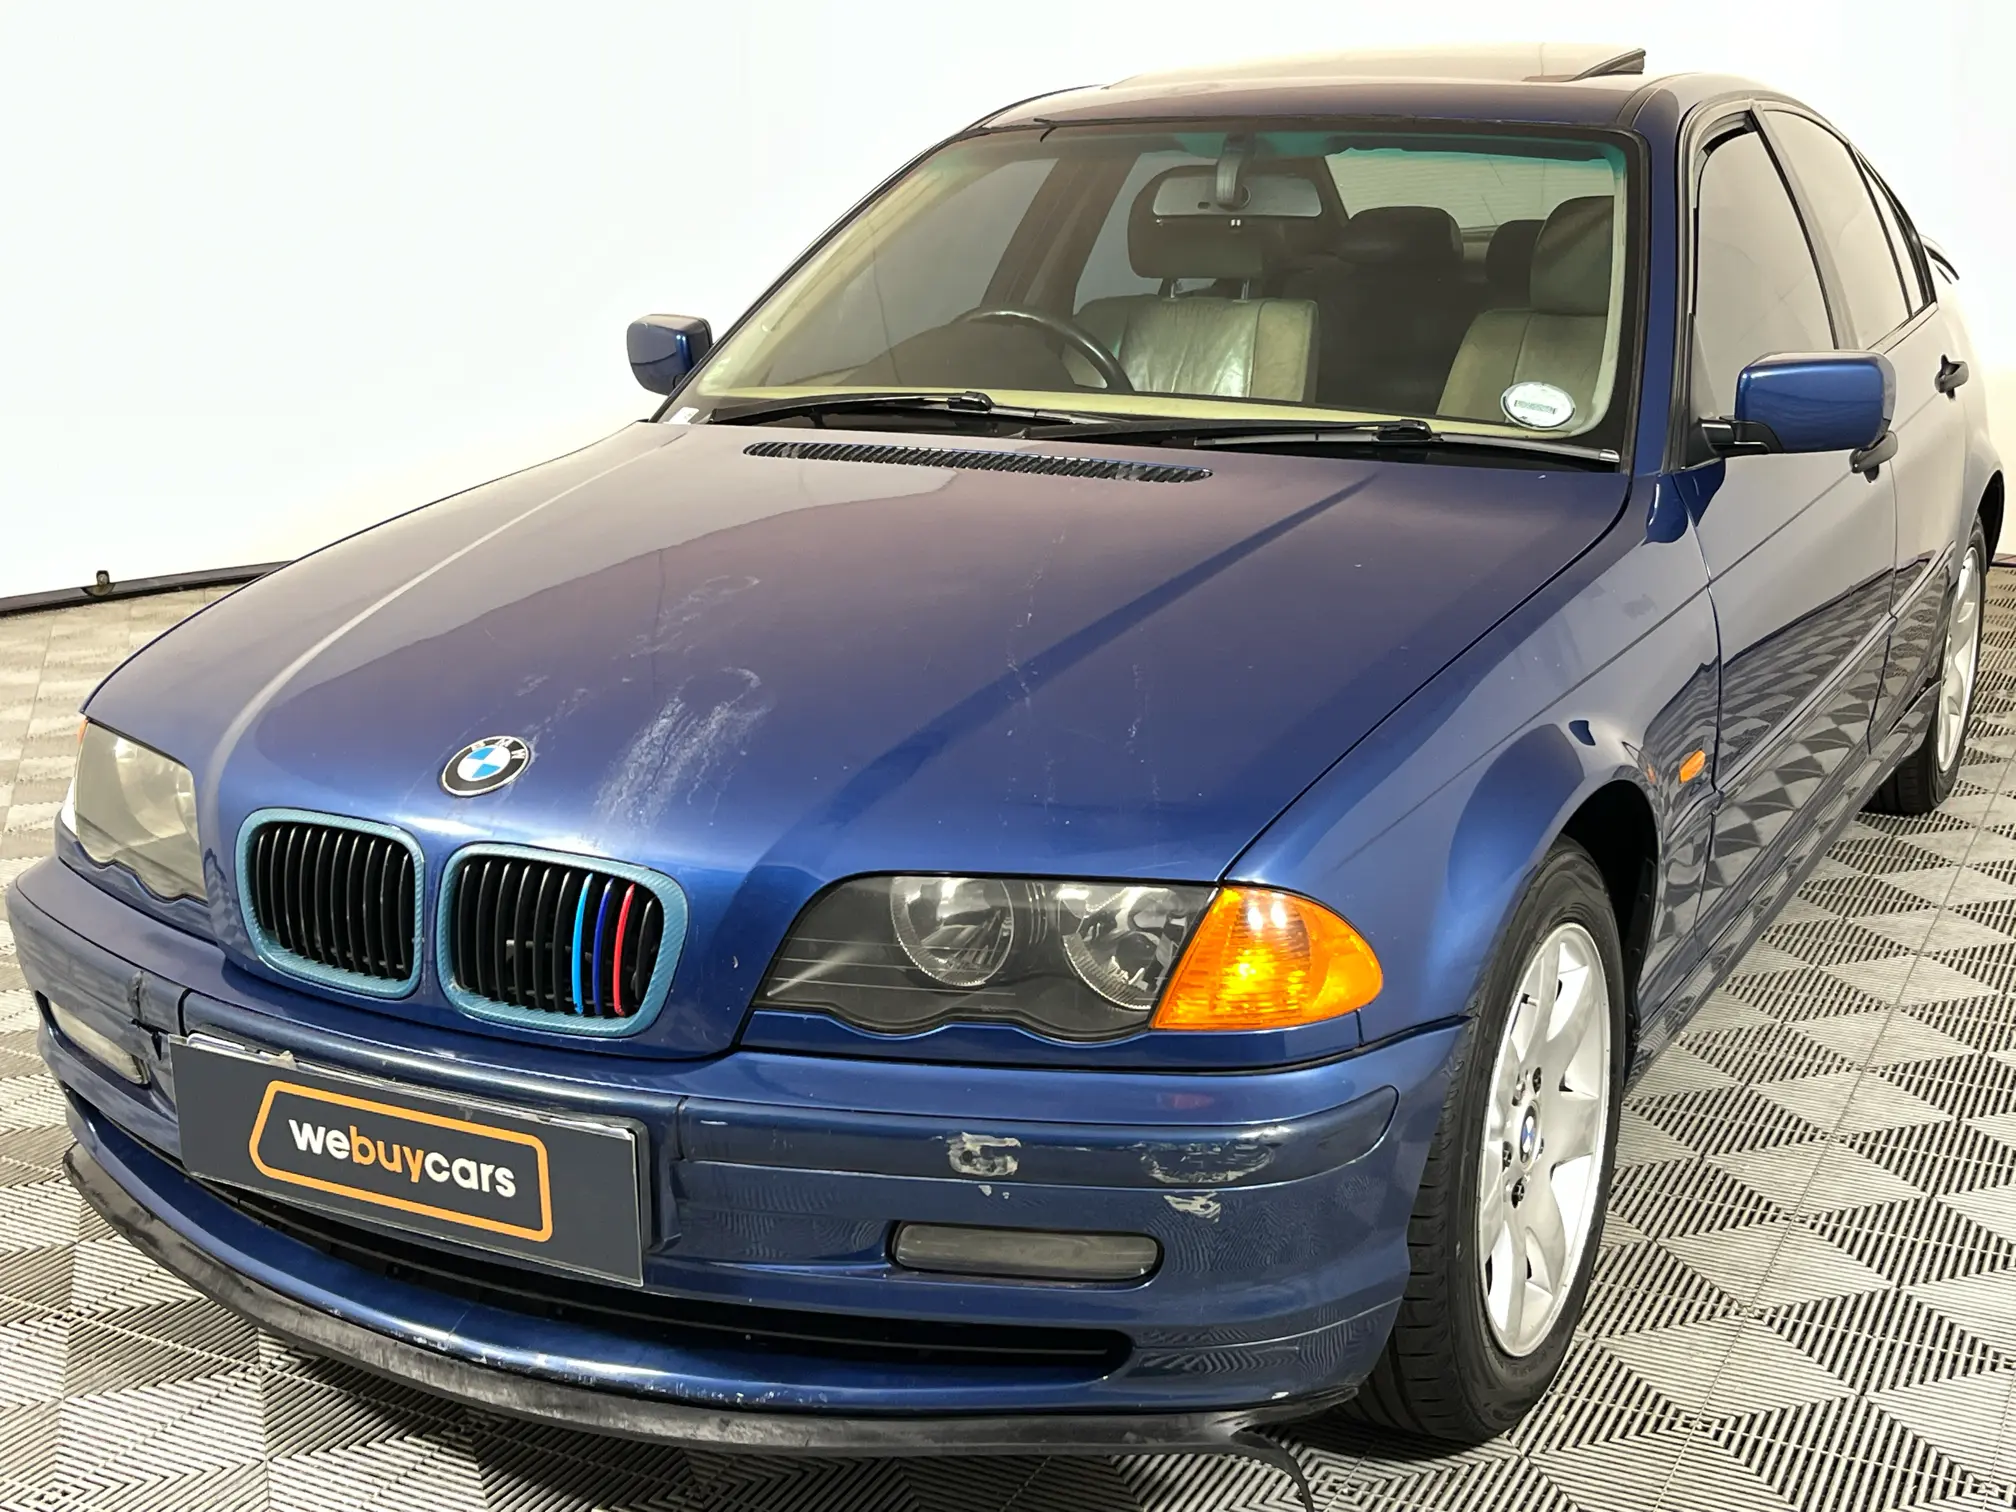 2001 BMW 3 Series 320d (e46)f/l